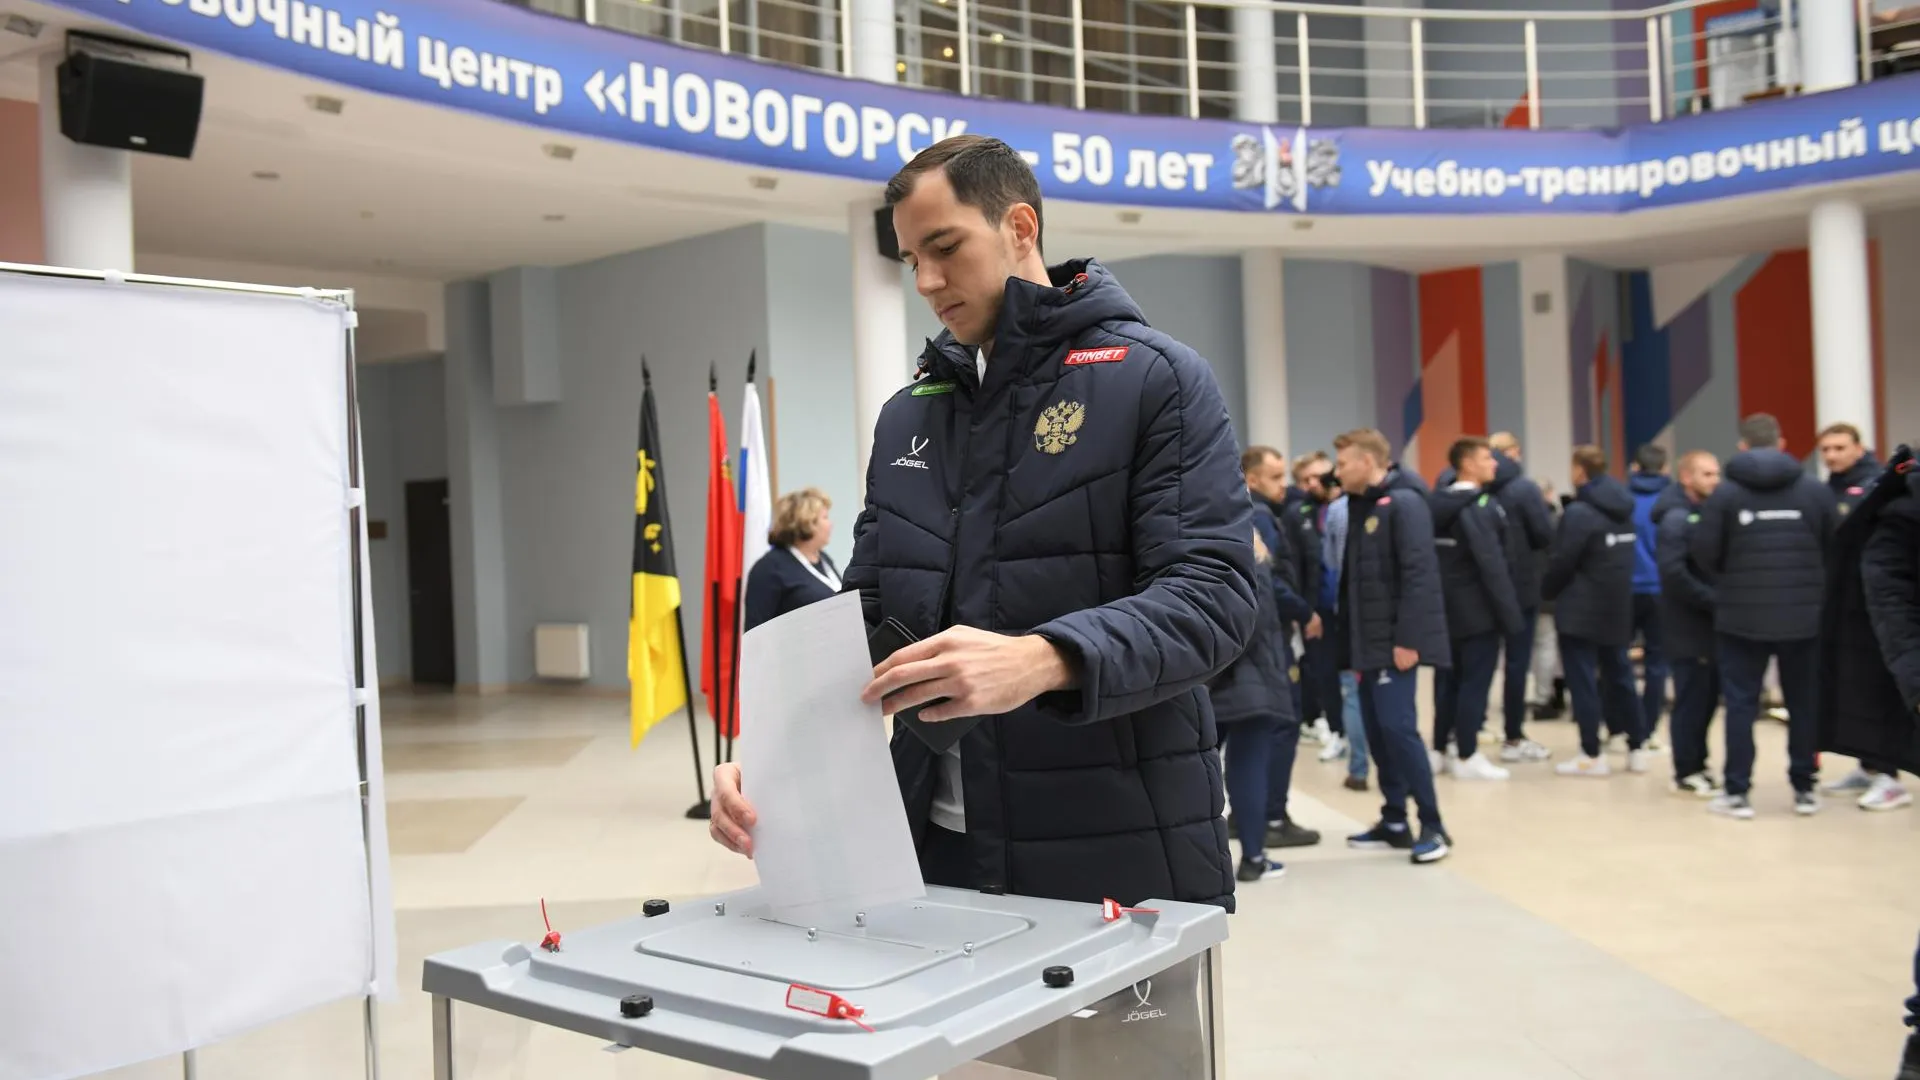 Сборная России по футболу проголосовала на выборах президента в Химках